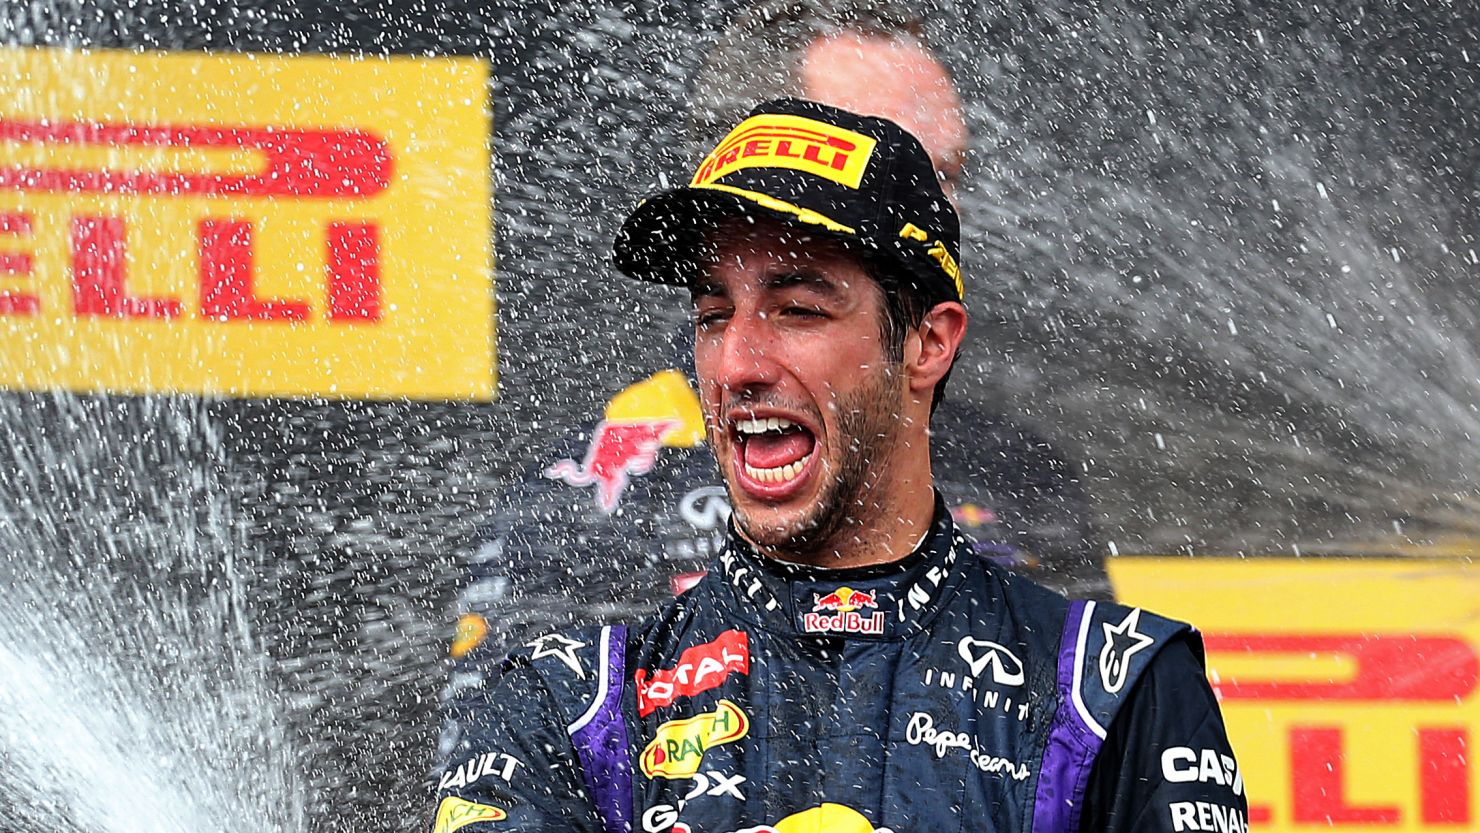 Daniel Ricciardo celebrates his superb victory in the Hungarian Grand Prix for Red Bull.